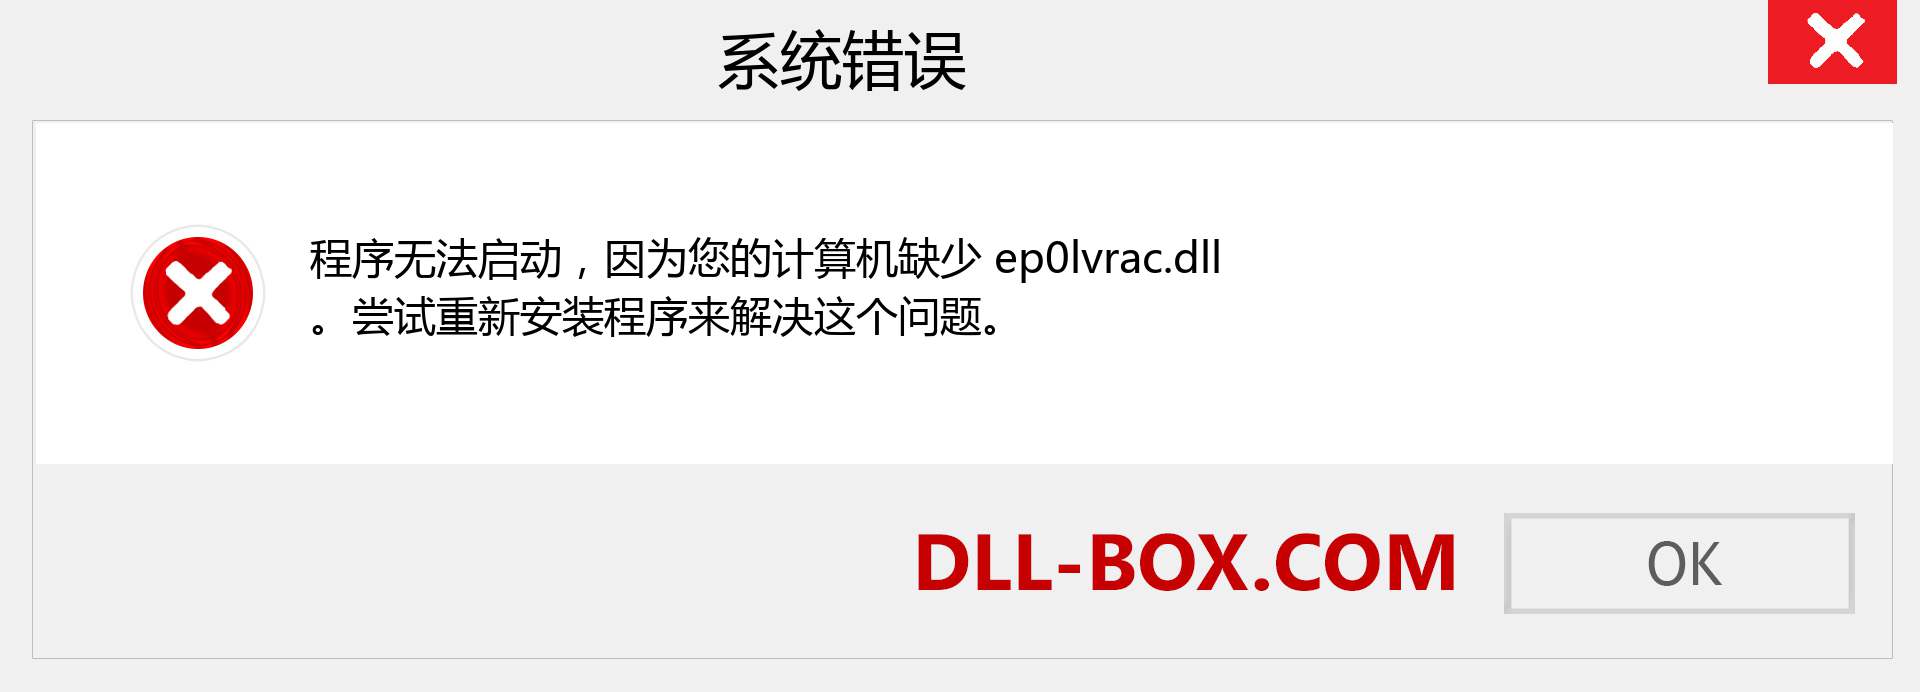 ep0lvrac.dll 文件丢失？。 适用于 Windows 7、8、10 的下载 - 修复 Windows、照片、图像上的 ep0lvrac dll 丢失错误